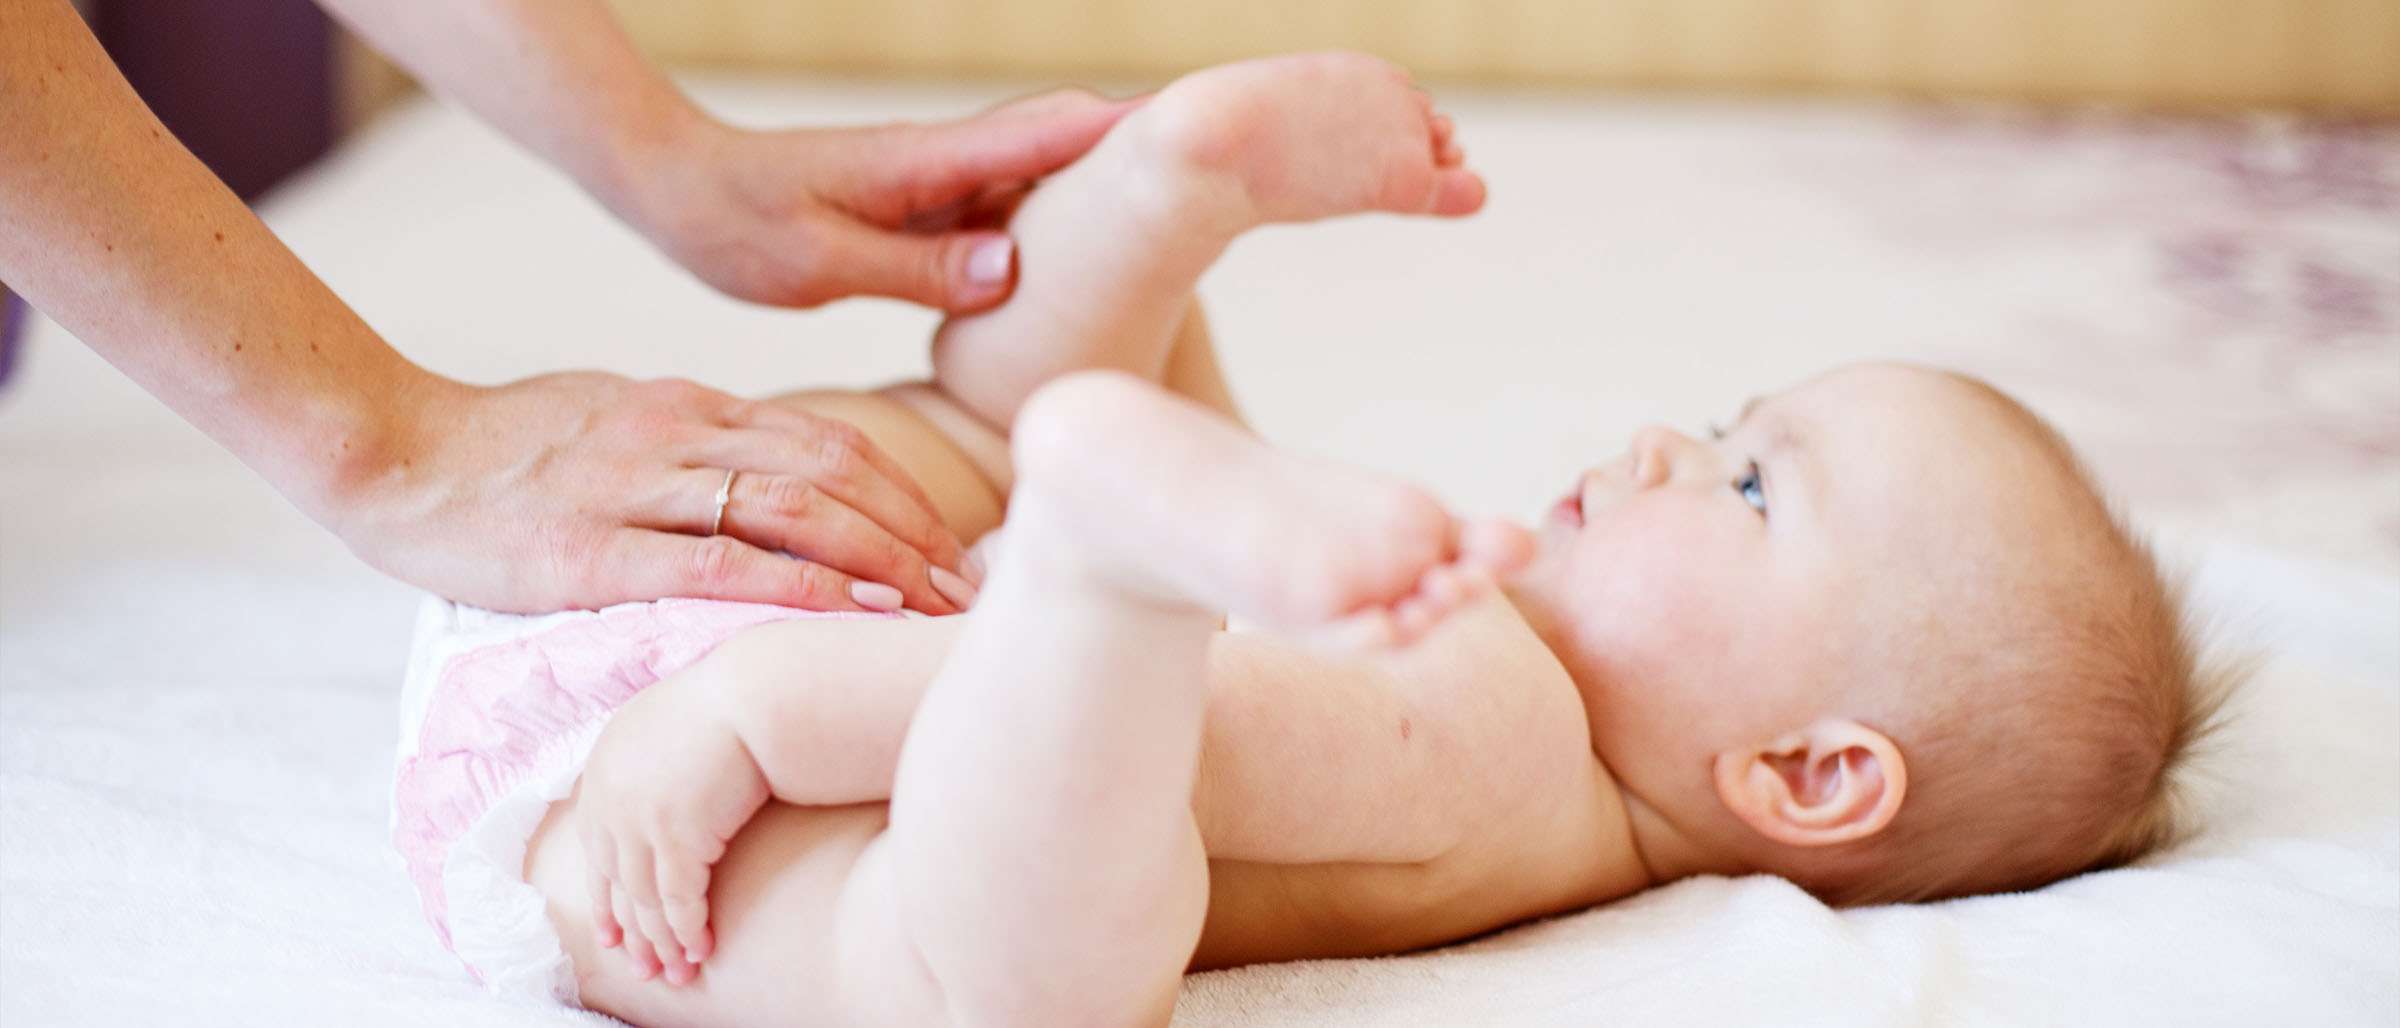 7 عوامل يمكن أن تسبّب طفح الحفاض لطفلكِ... والوقاية خير من ألف علاج!